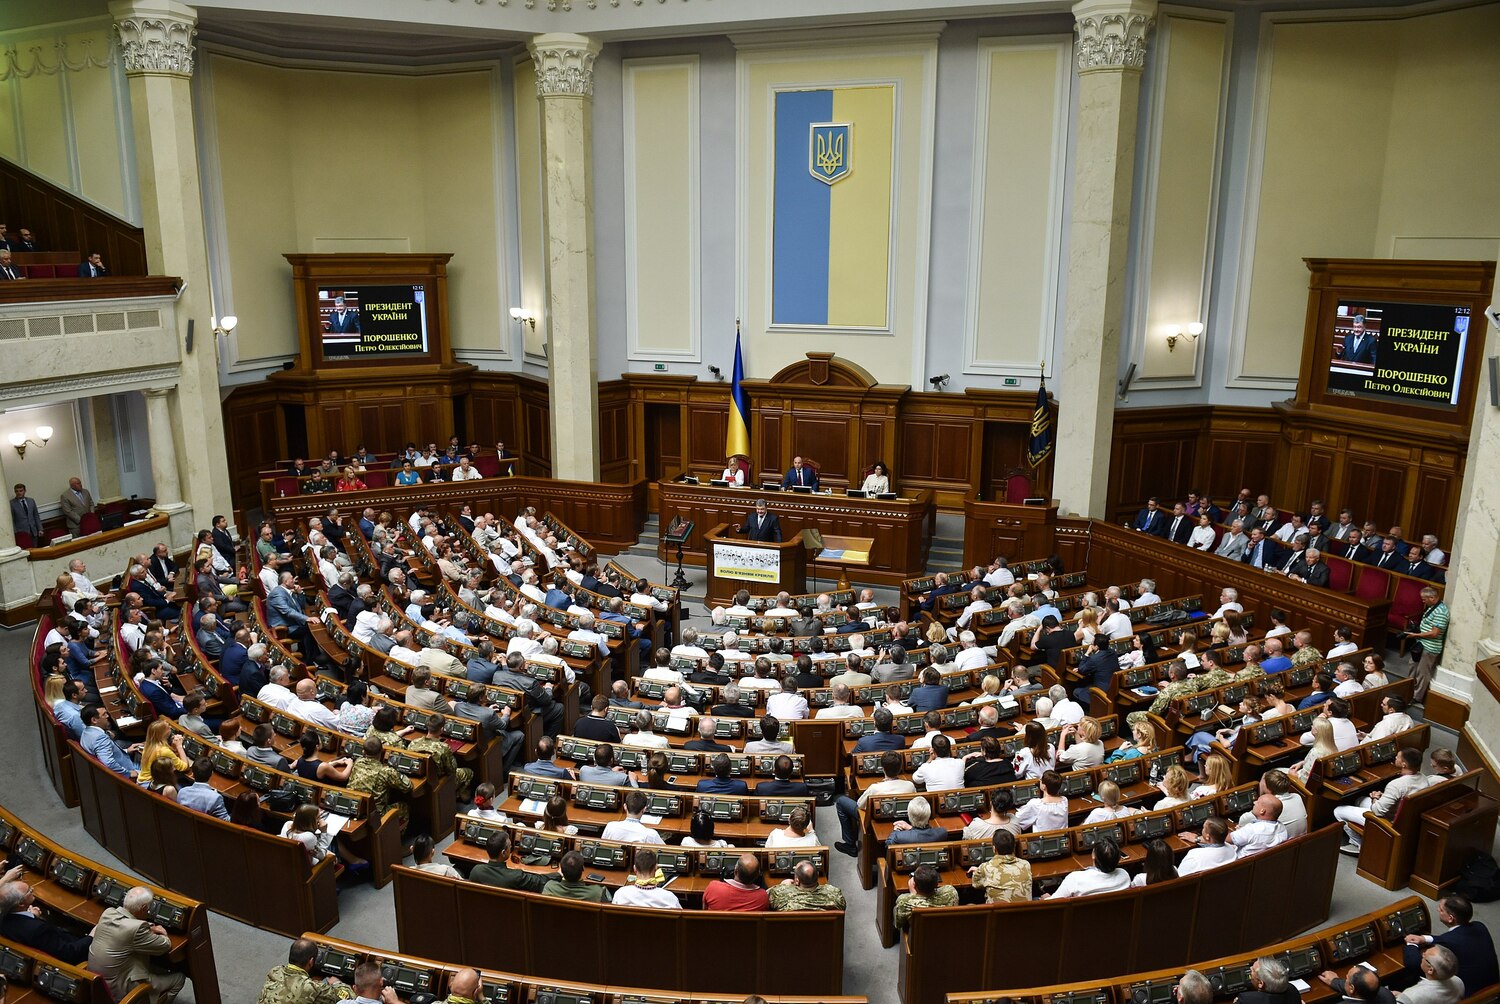 去俄羅斯化！烏克蘭國會通過禁俄書籍、音樂法案